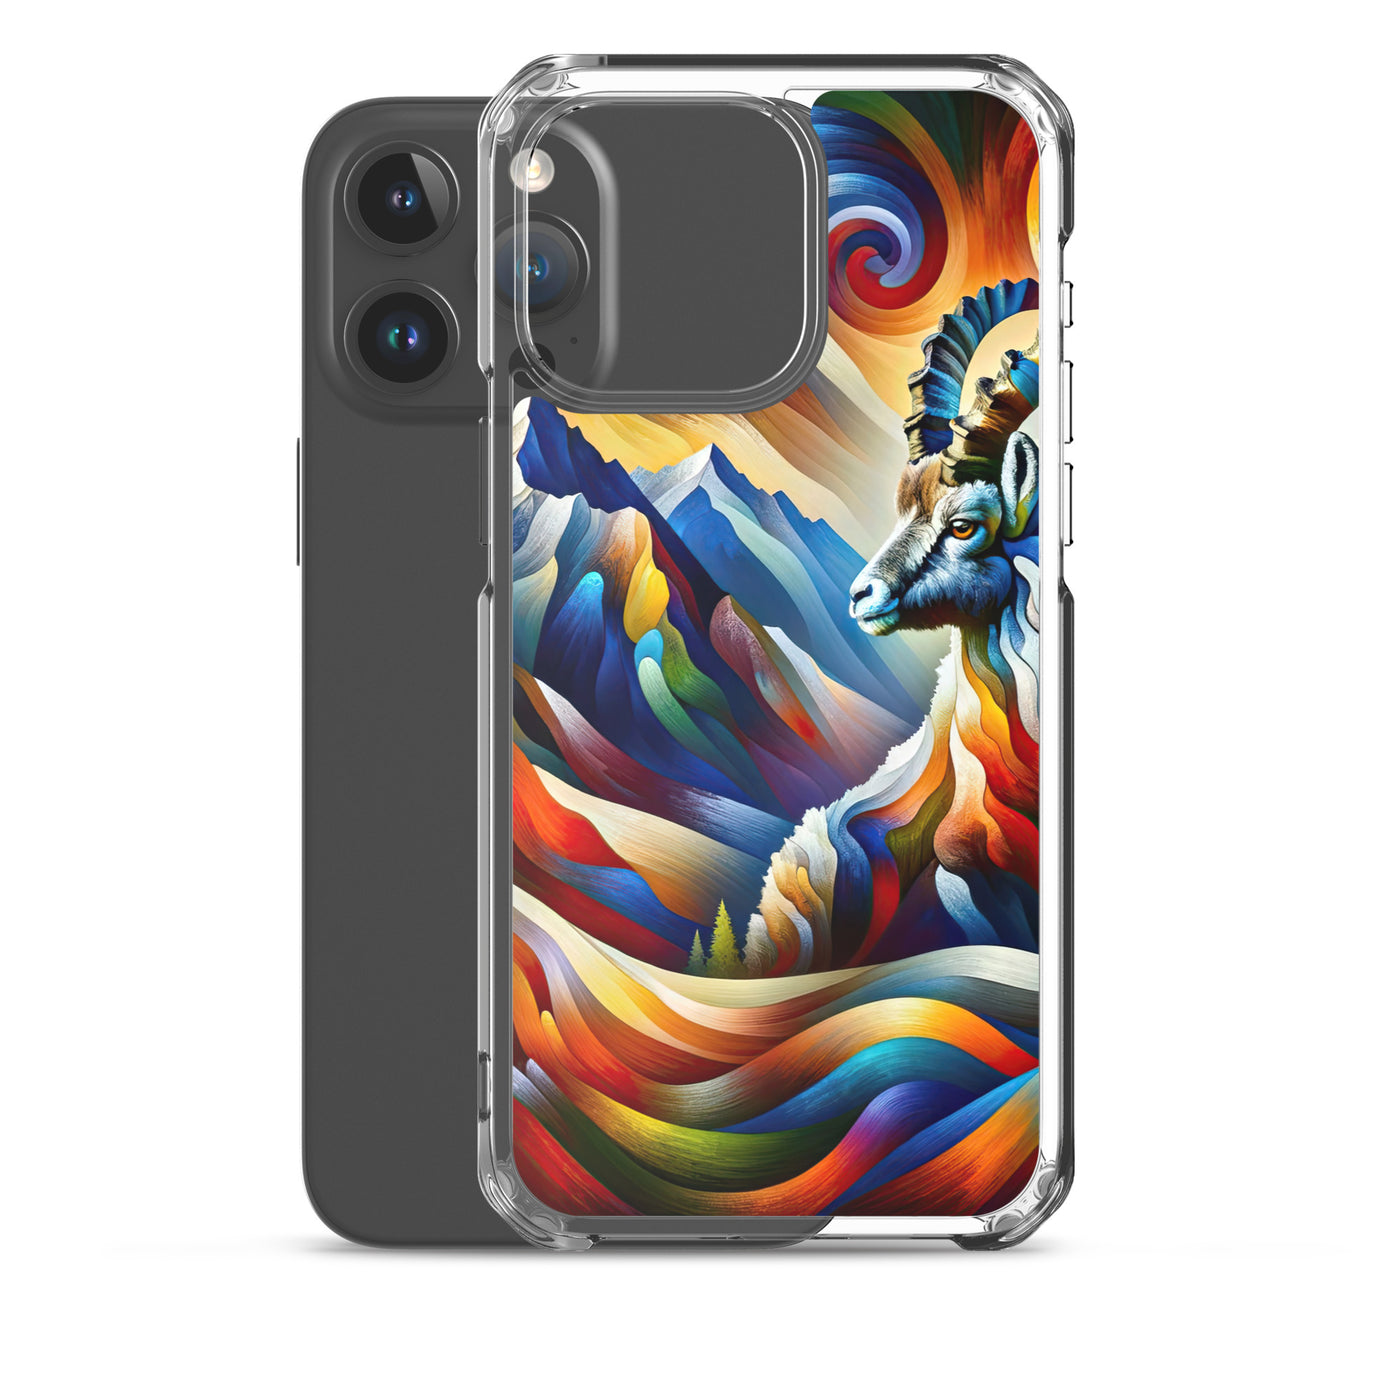 Alpiner Steinbock: Abstrakte Farbflut und lebendige Berge - iPhone Schutzhülle (durchsichtig) berge xxx yyy zzz